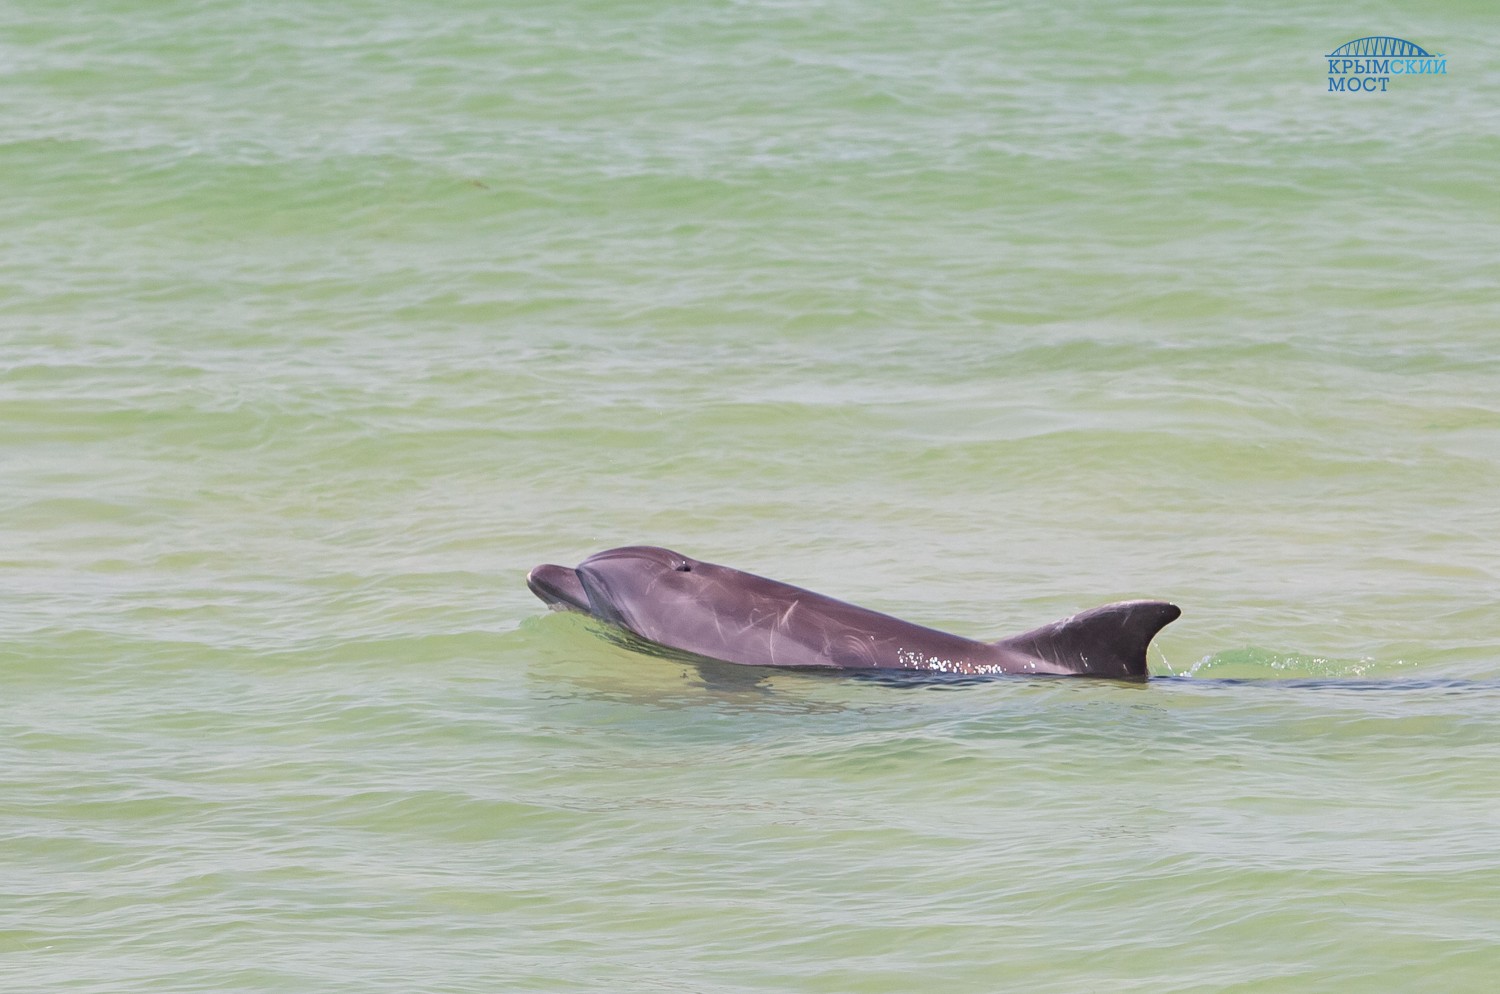 Строительство моста в Керченском проливе способствует росту численности дельфинов